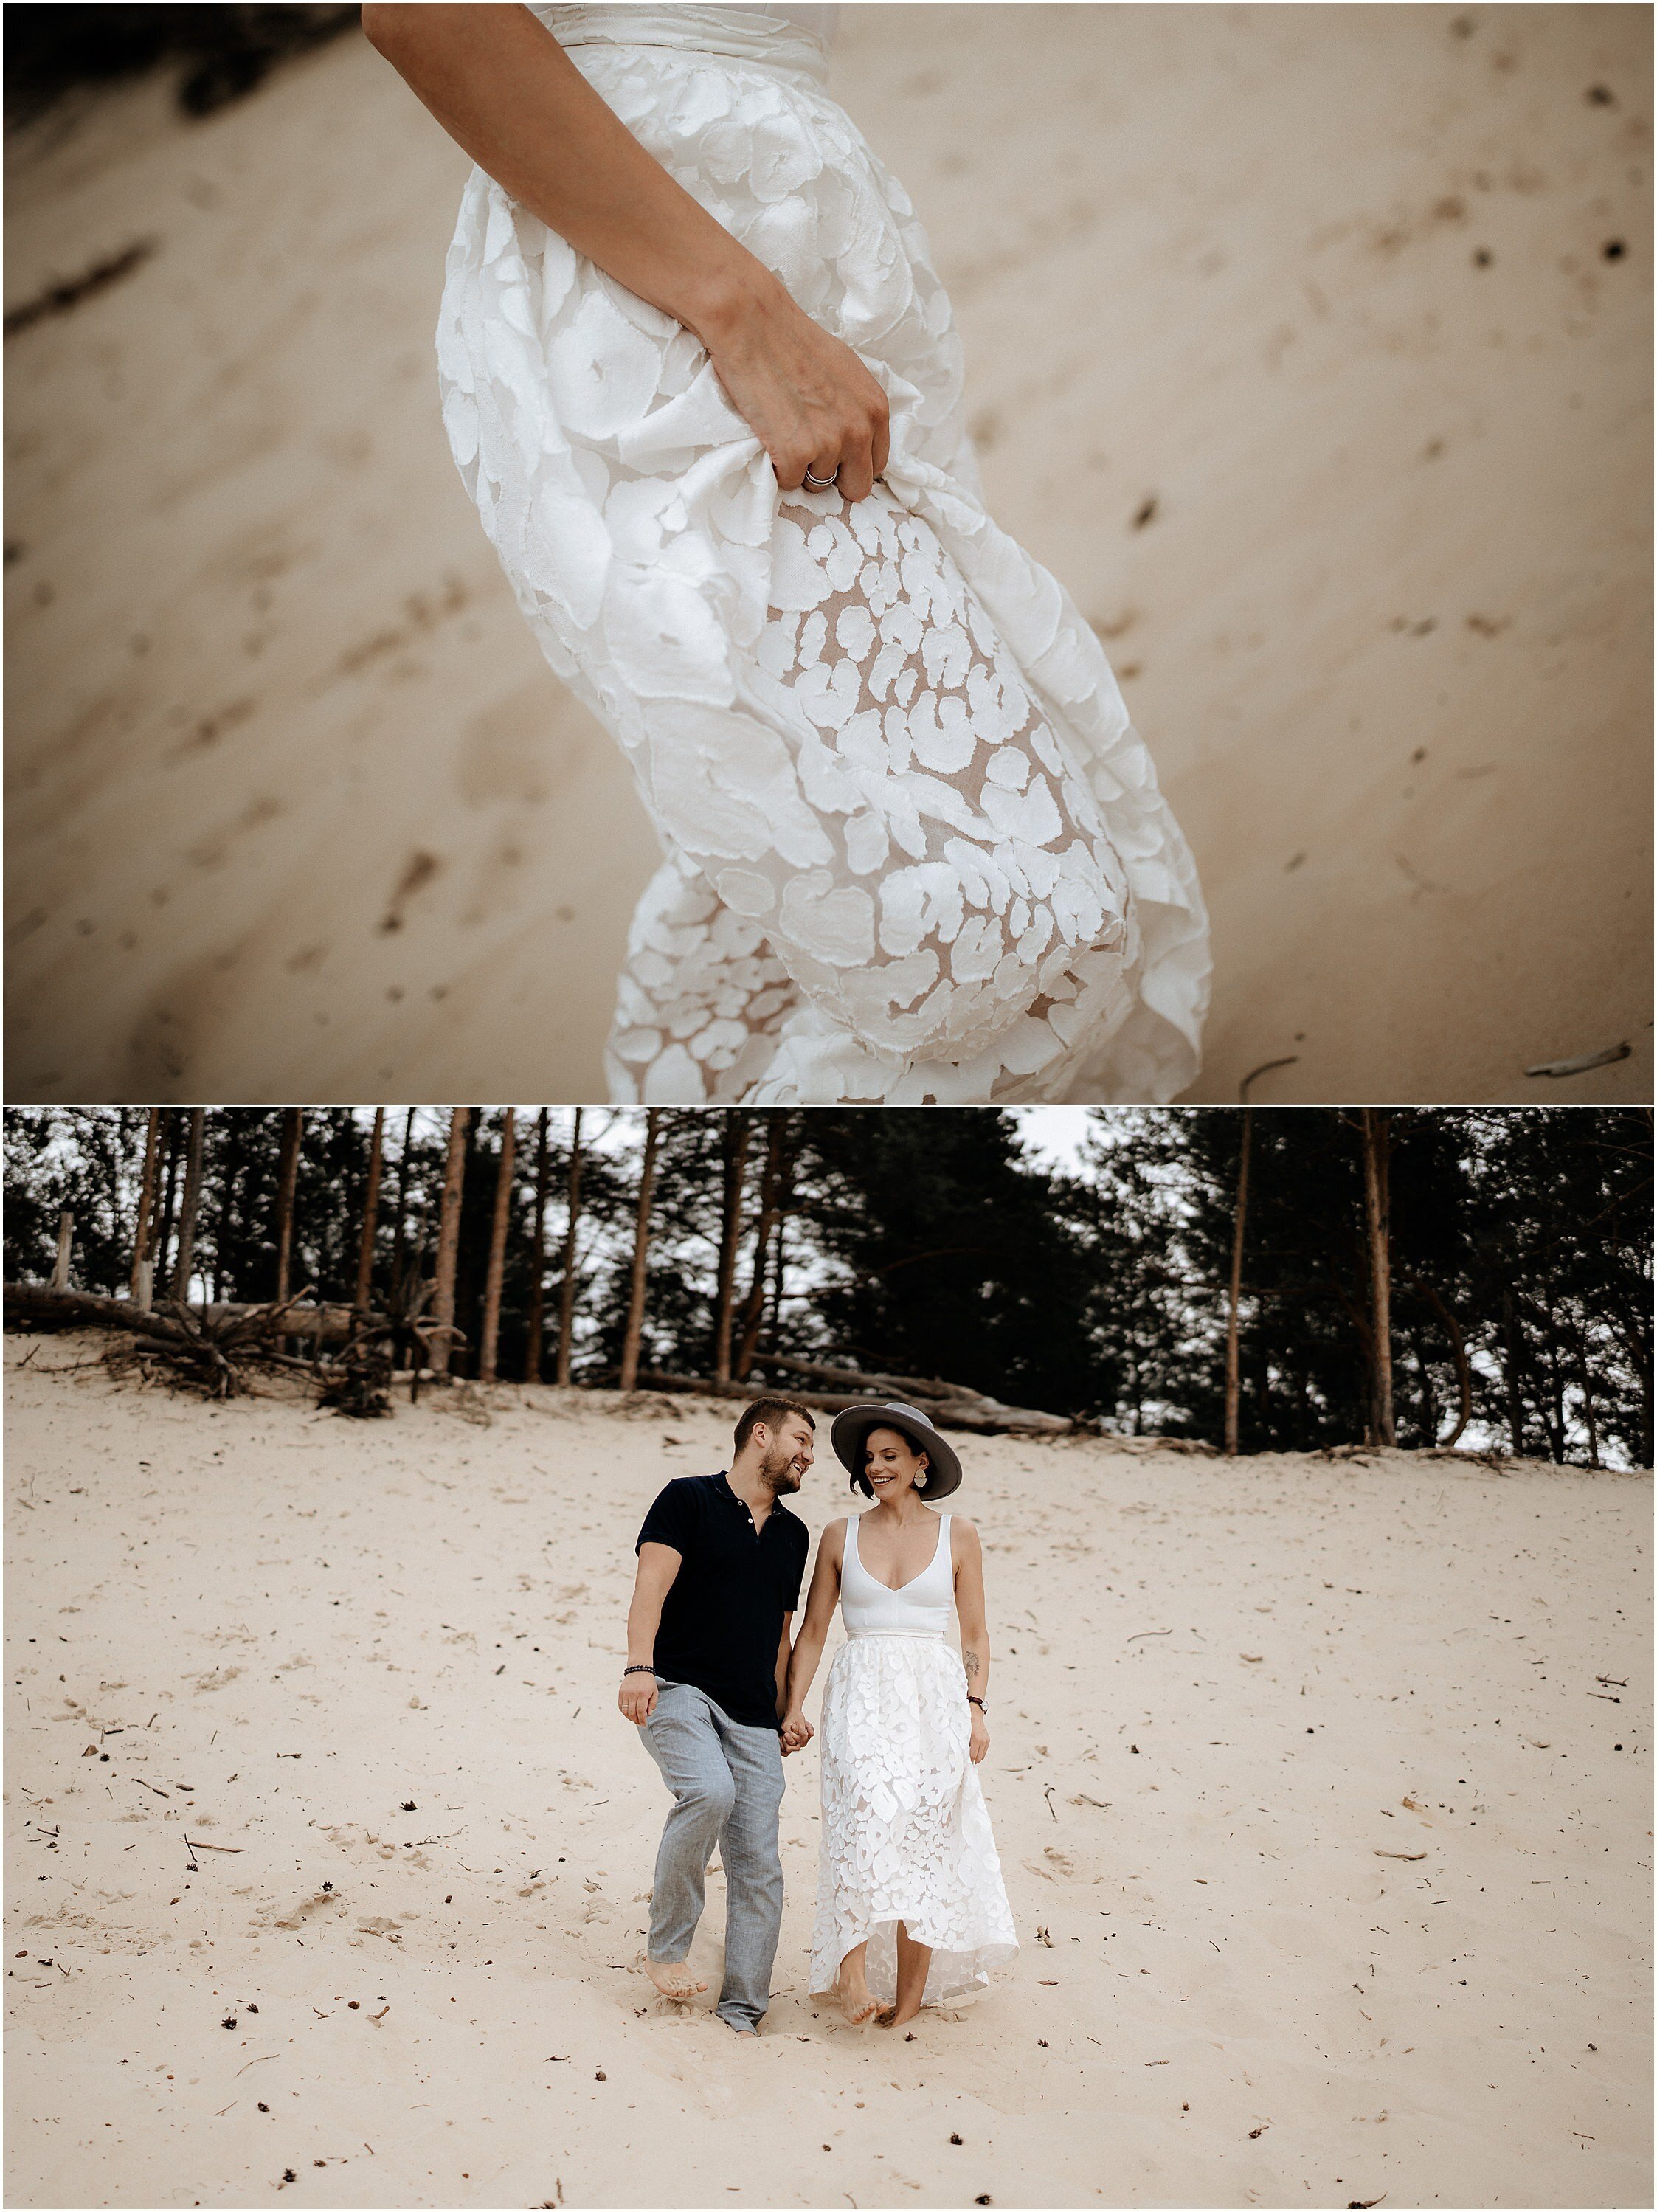 Zanda+Auckland+wedding+photographer+romantic+couple+portrait++white+sand+dunes+Europe+Latvia+New+Zealand_4.jpeg